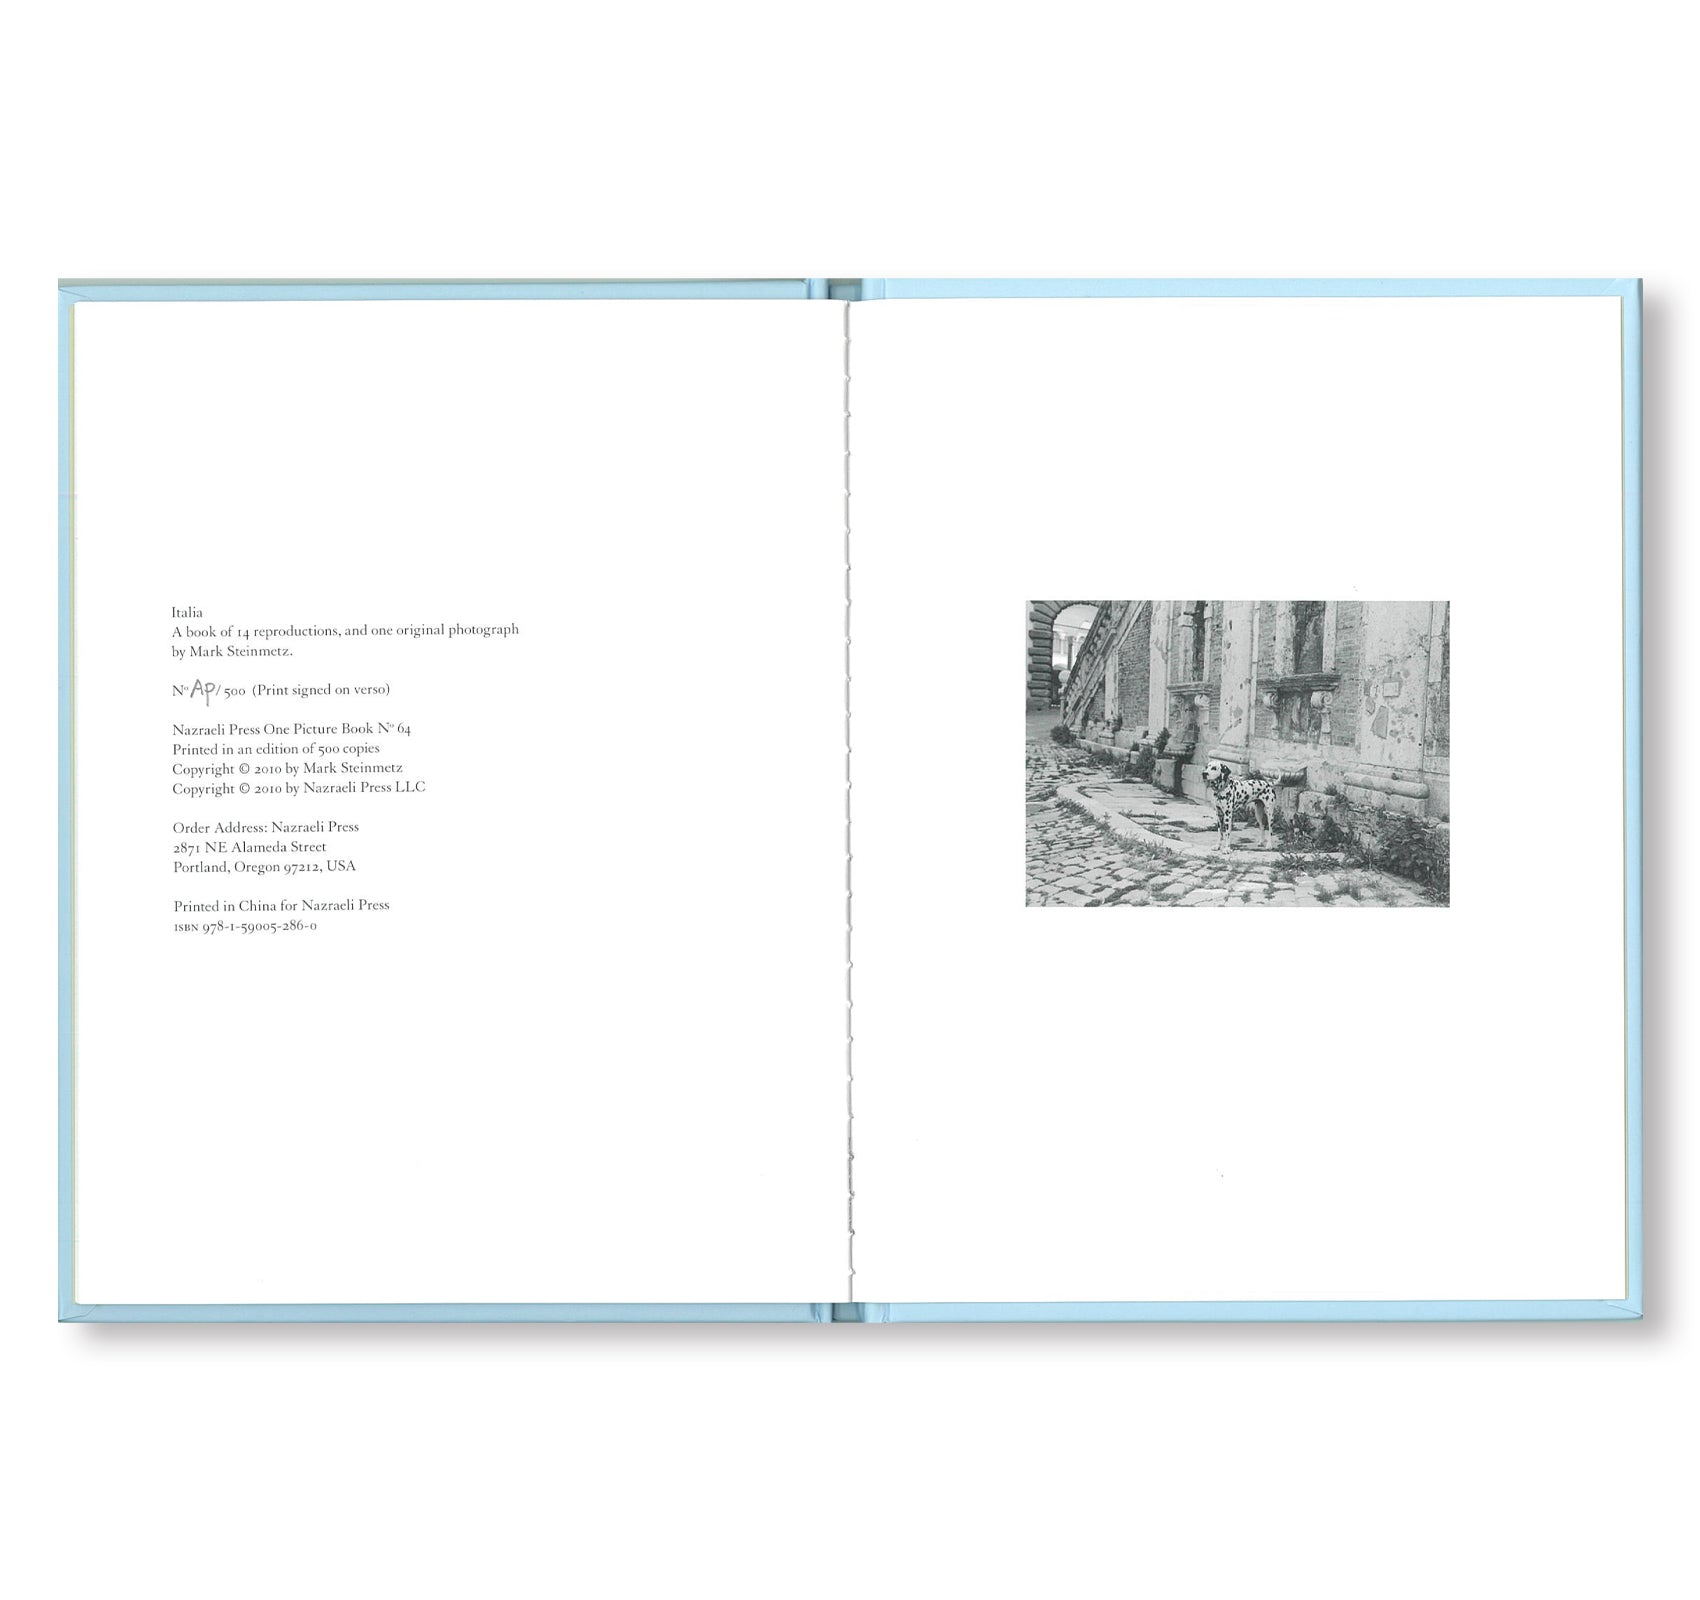 ONE PICTURE BOOK #64: ITALIA: CRONACA DI UN AMORE by Mark Steinmetz